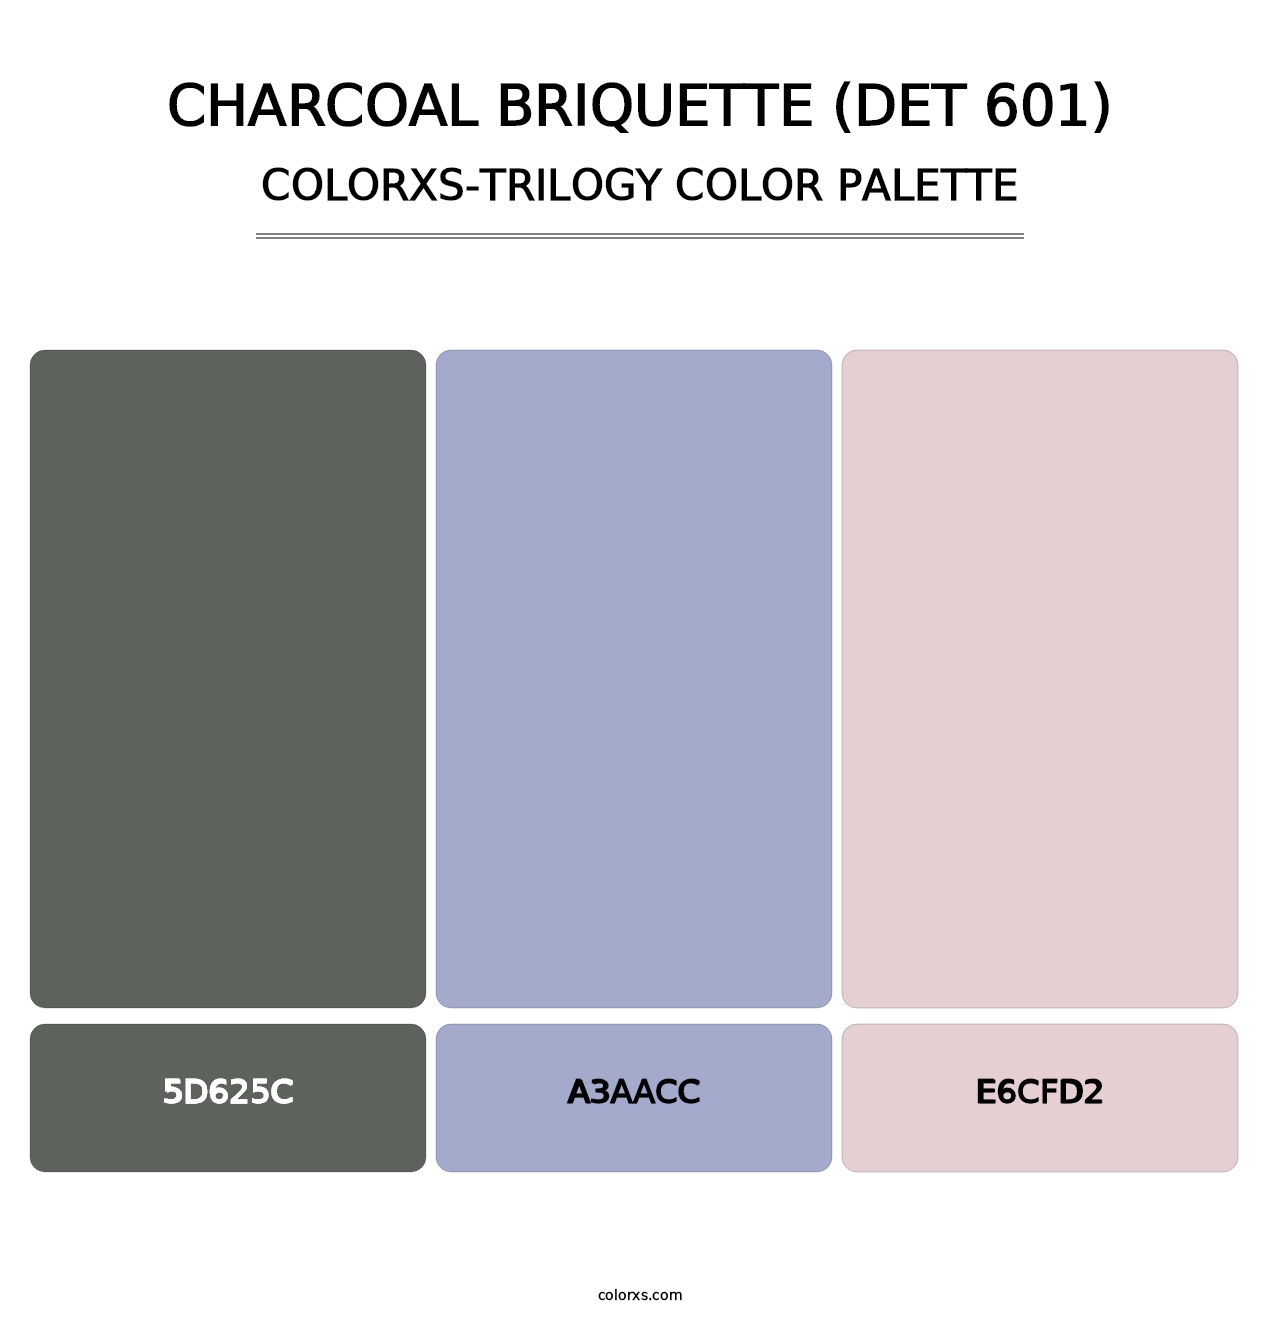 Charcoal Briquette (DET 601) - Colorxs Trilogy Palette